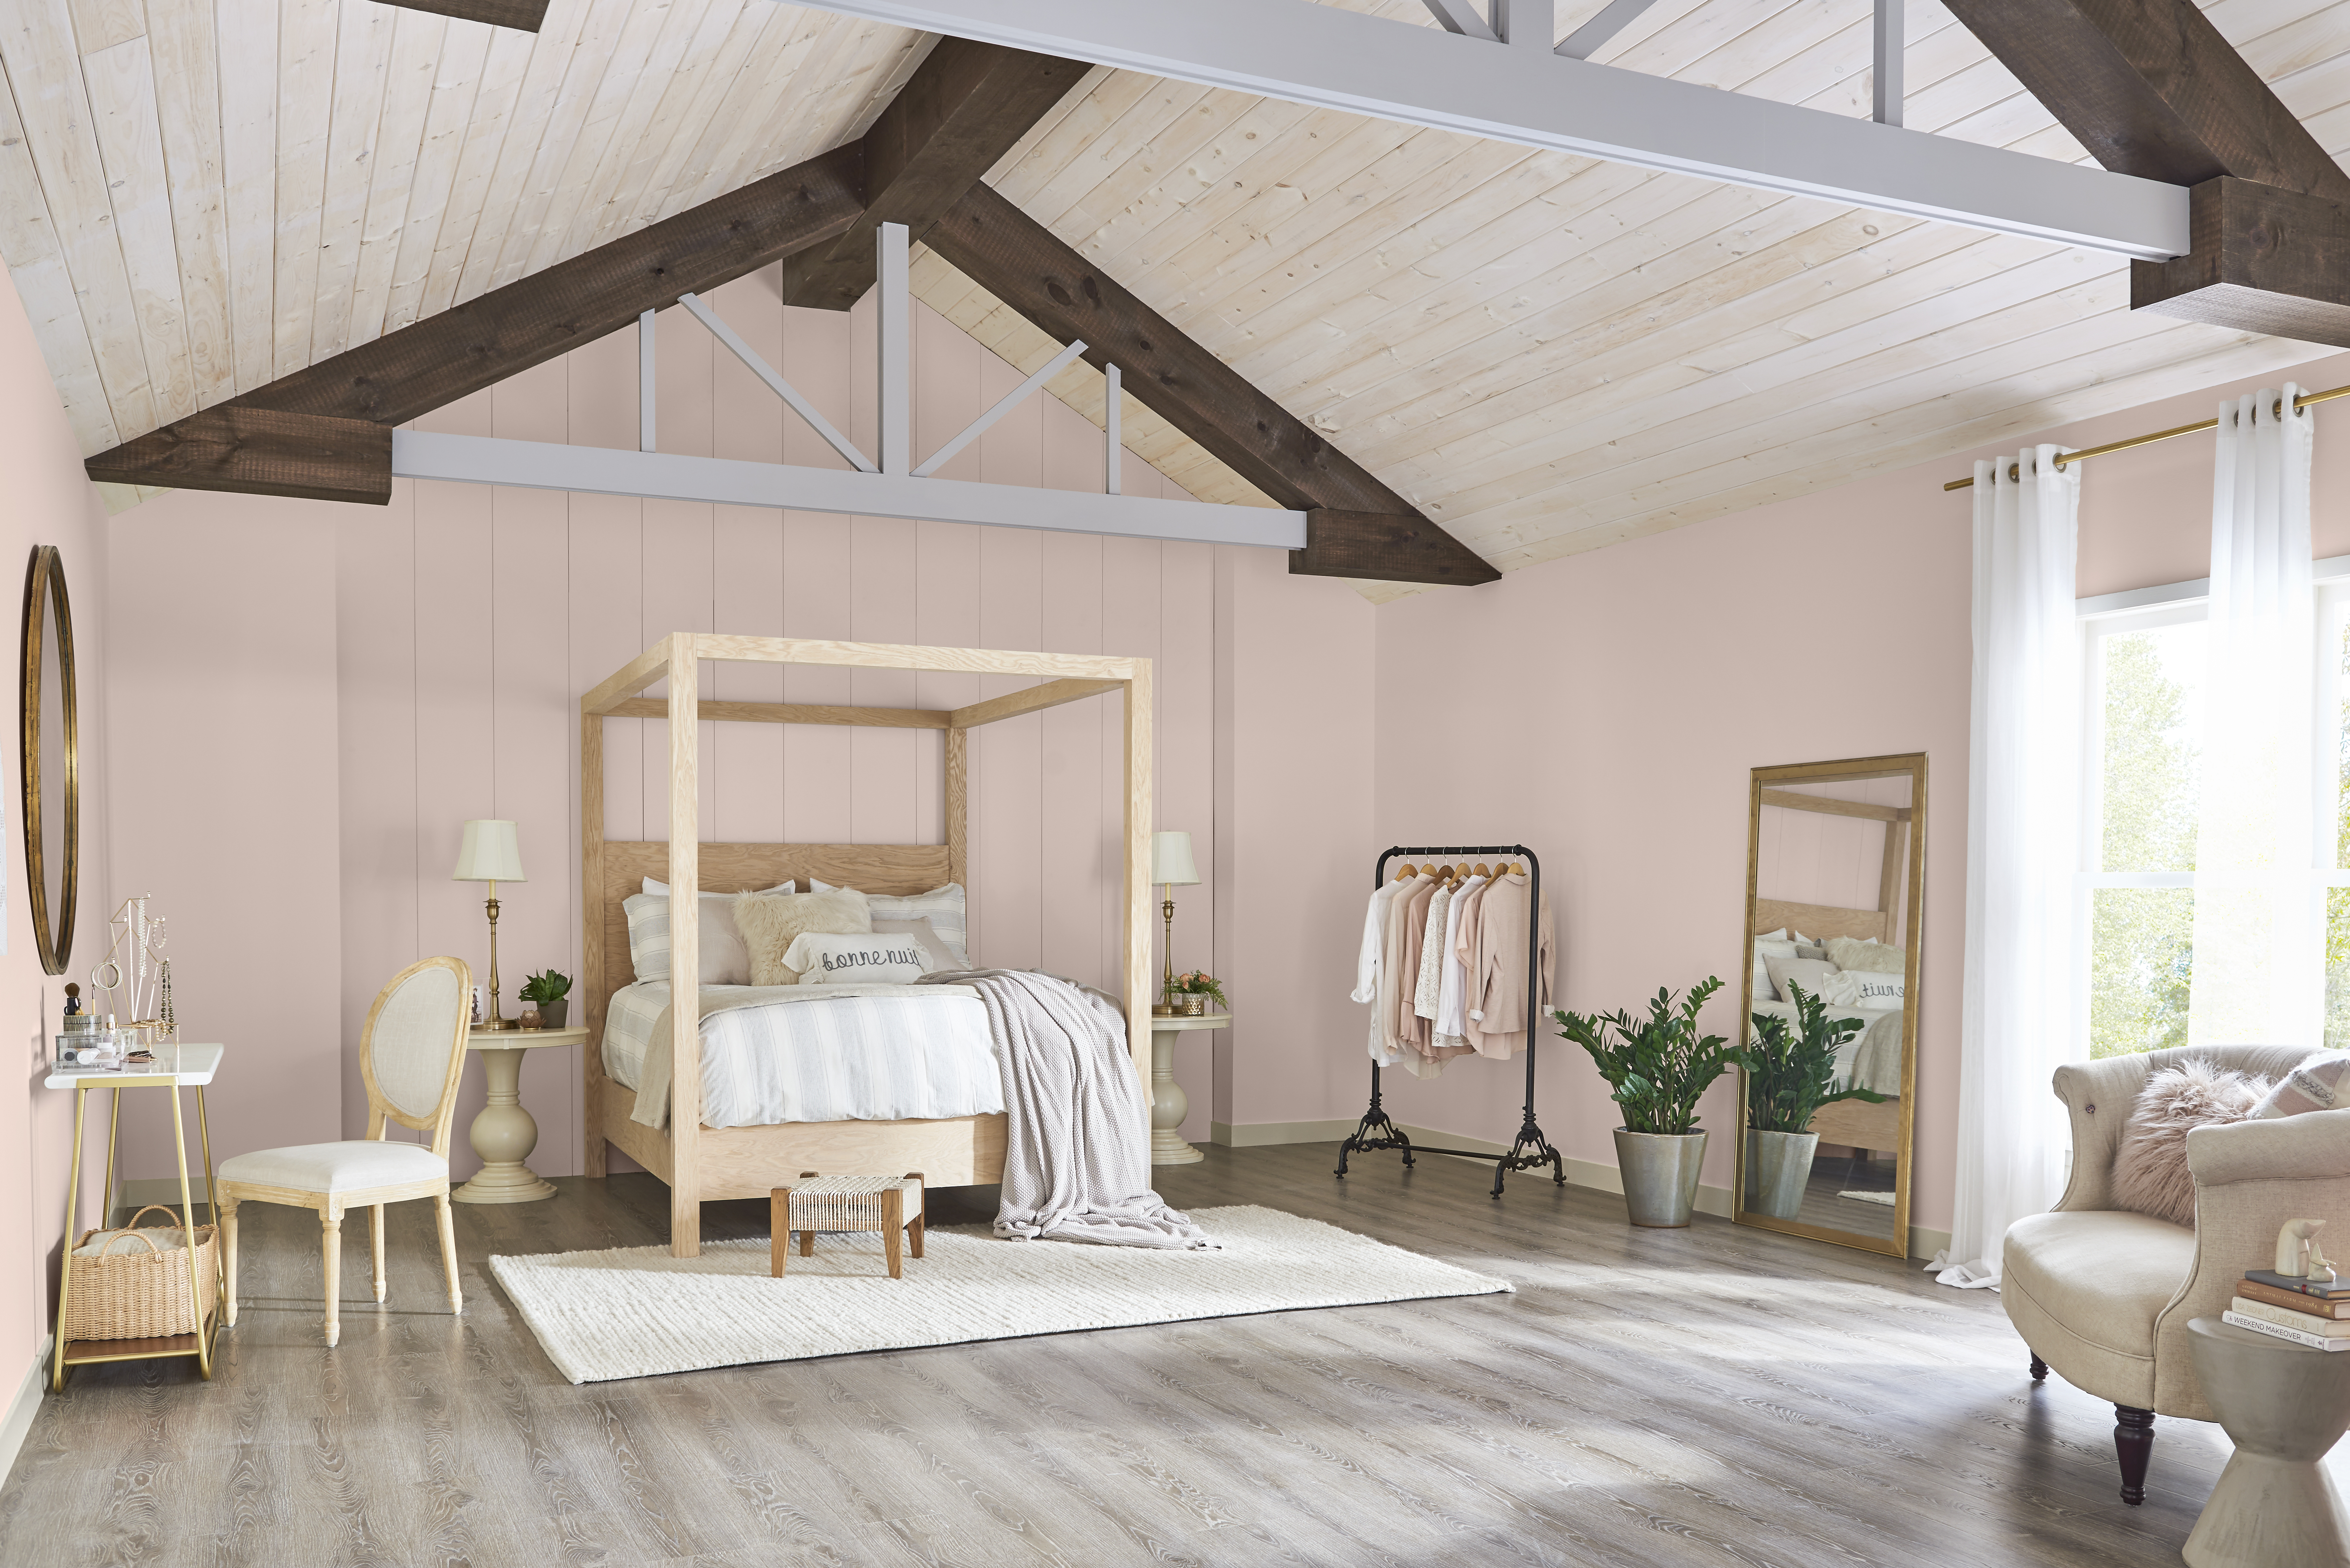 Une chambre aux murs peints en Rose fumé avec un grand lit à baldaquin en bois décoré de coussins et literie aux tons neutres